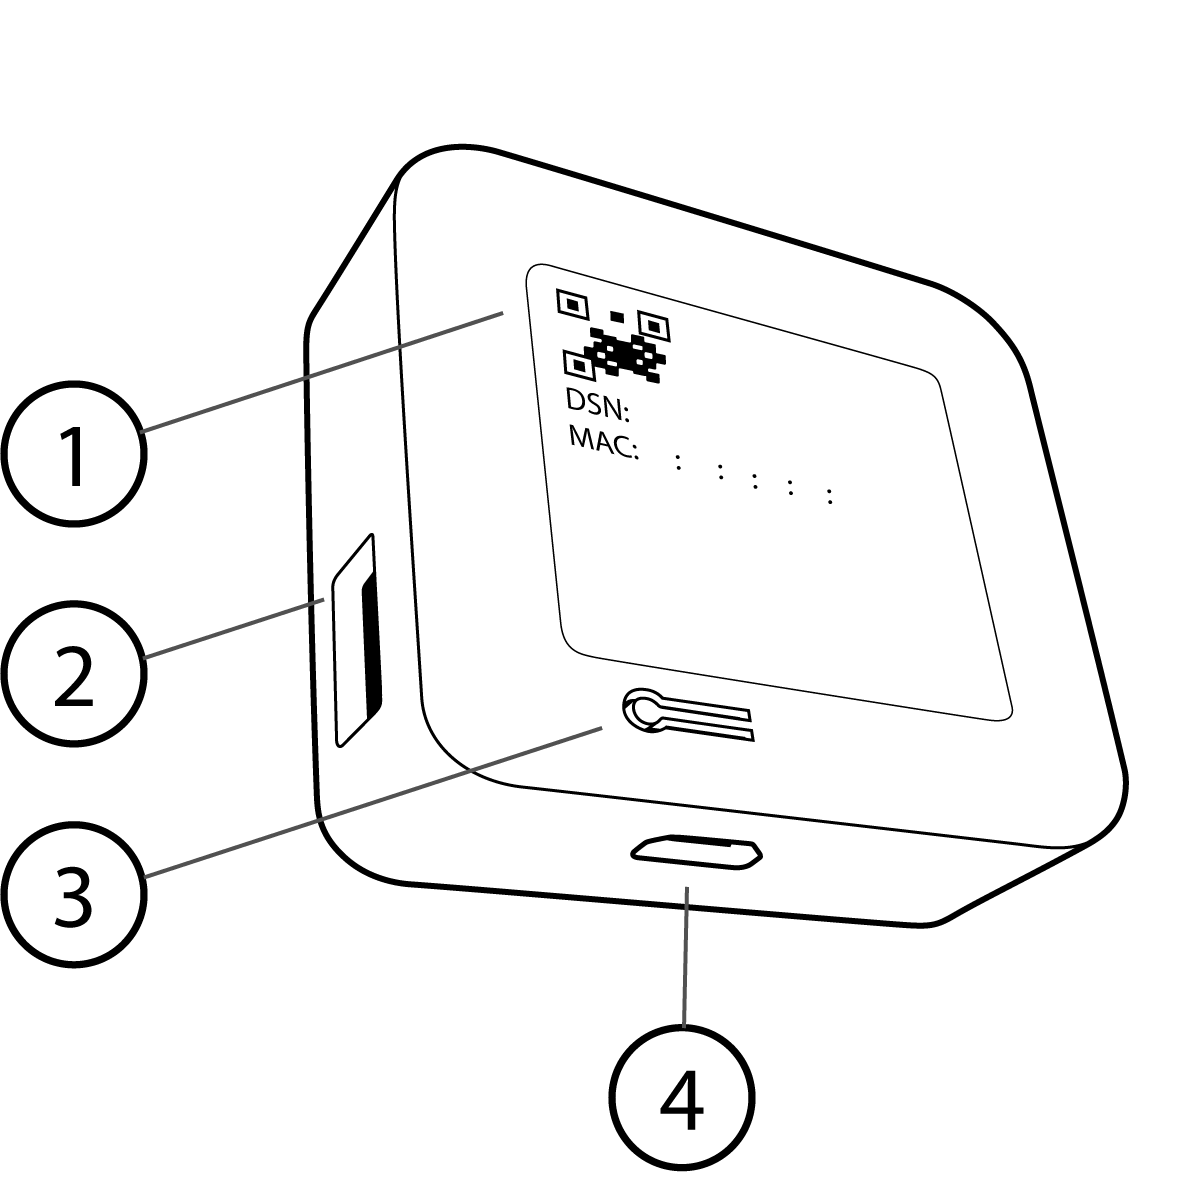 Bild der Rückseite eines Synchronisierungsmoduls 2 mit dem QR-Code der Seriennummer, dem USB-A-Anschluss für ein Laufwerk mit bis zu 256 Gigabyte, der Reset-Taste auf der Rückseite des Synchronisierungsmoduls und dem Micro-USB-Stromanschluss